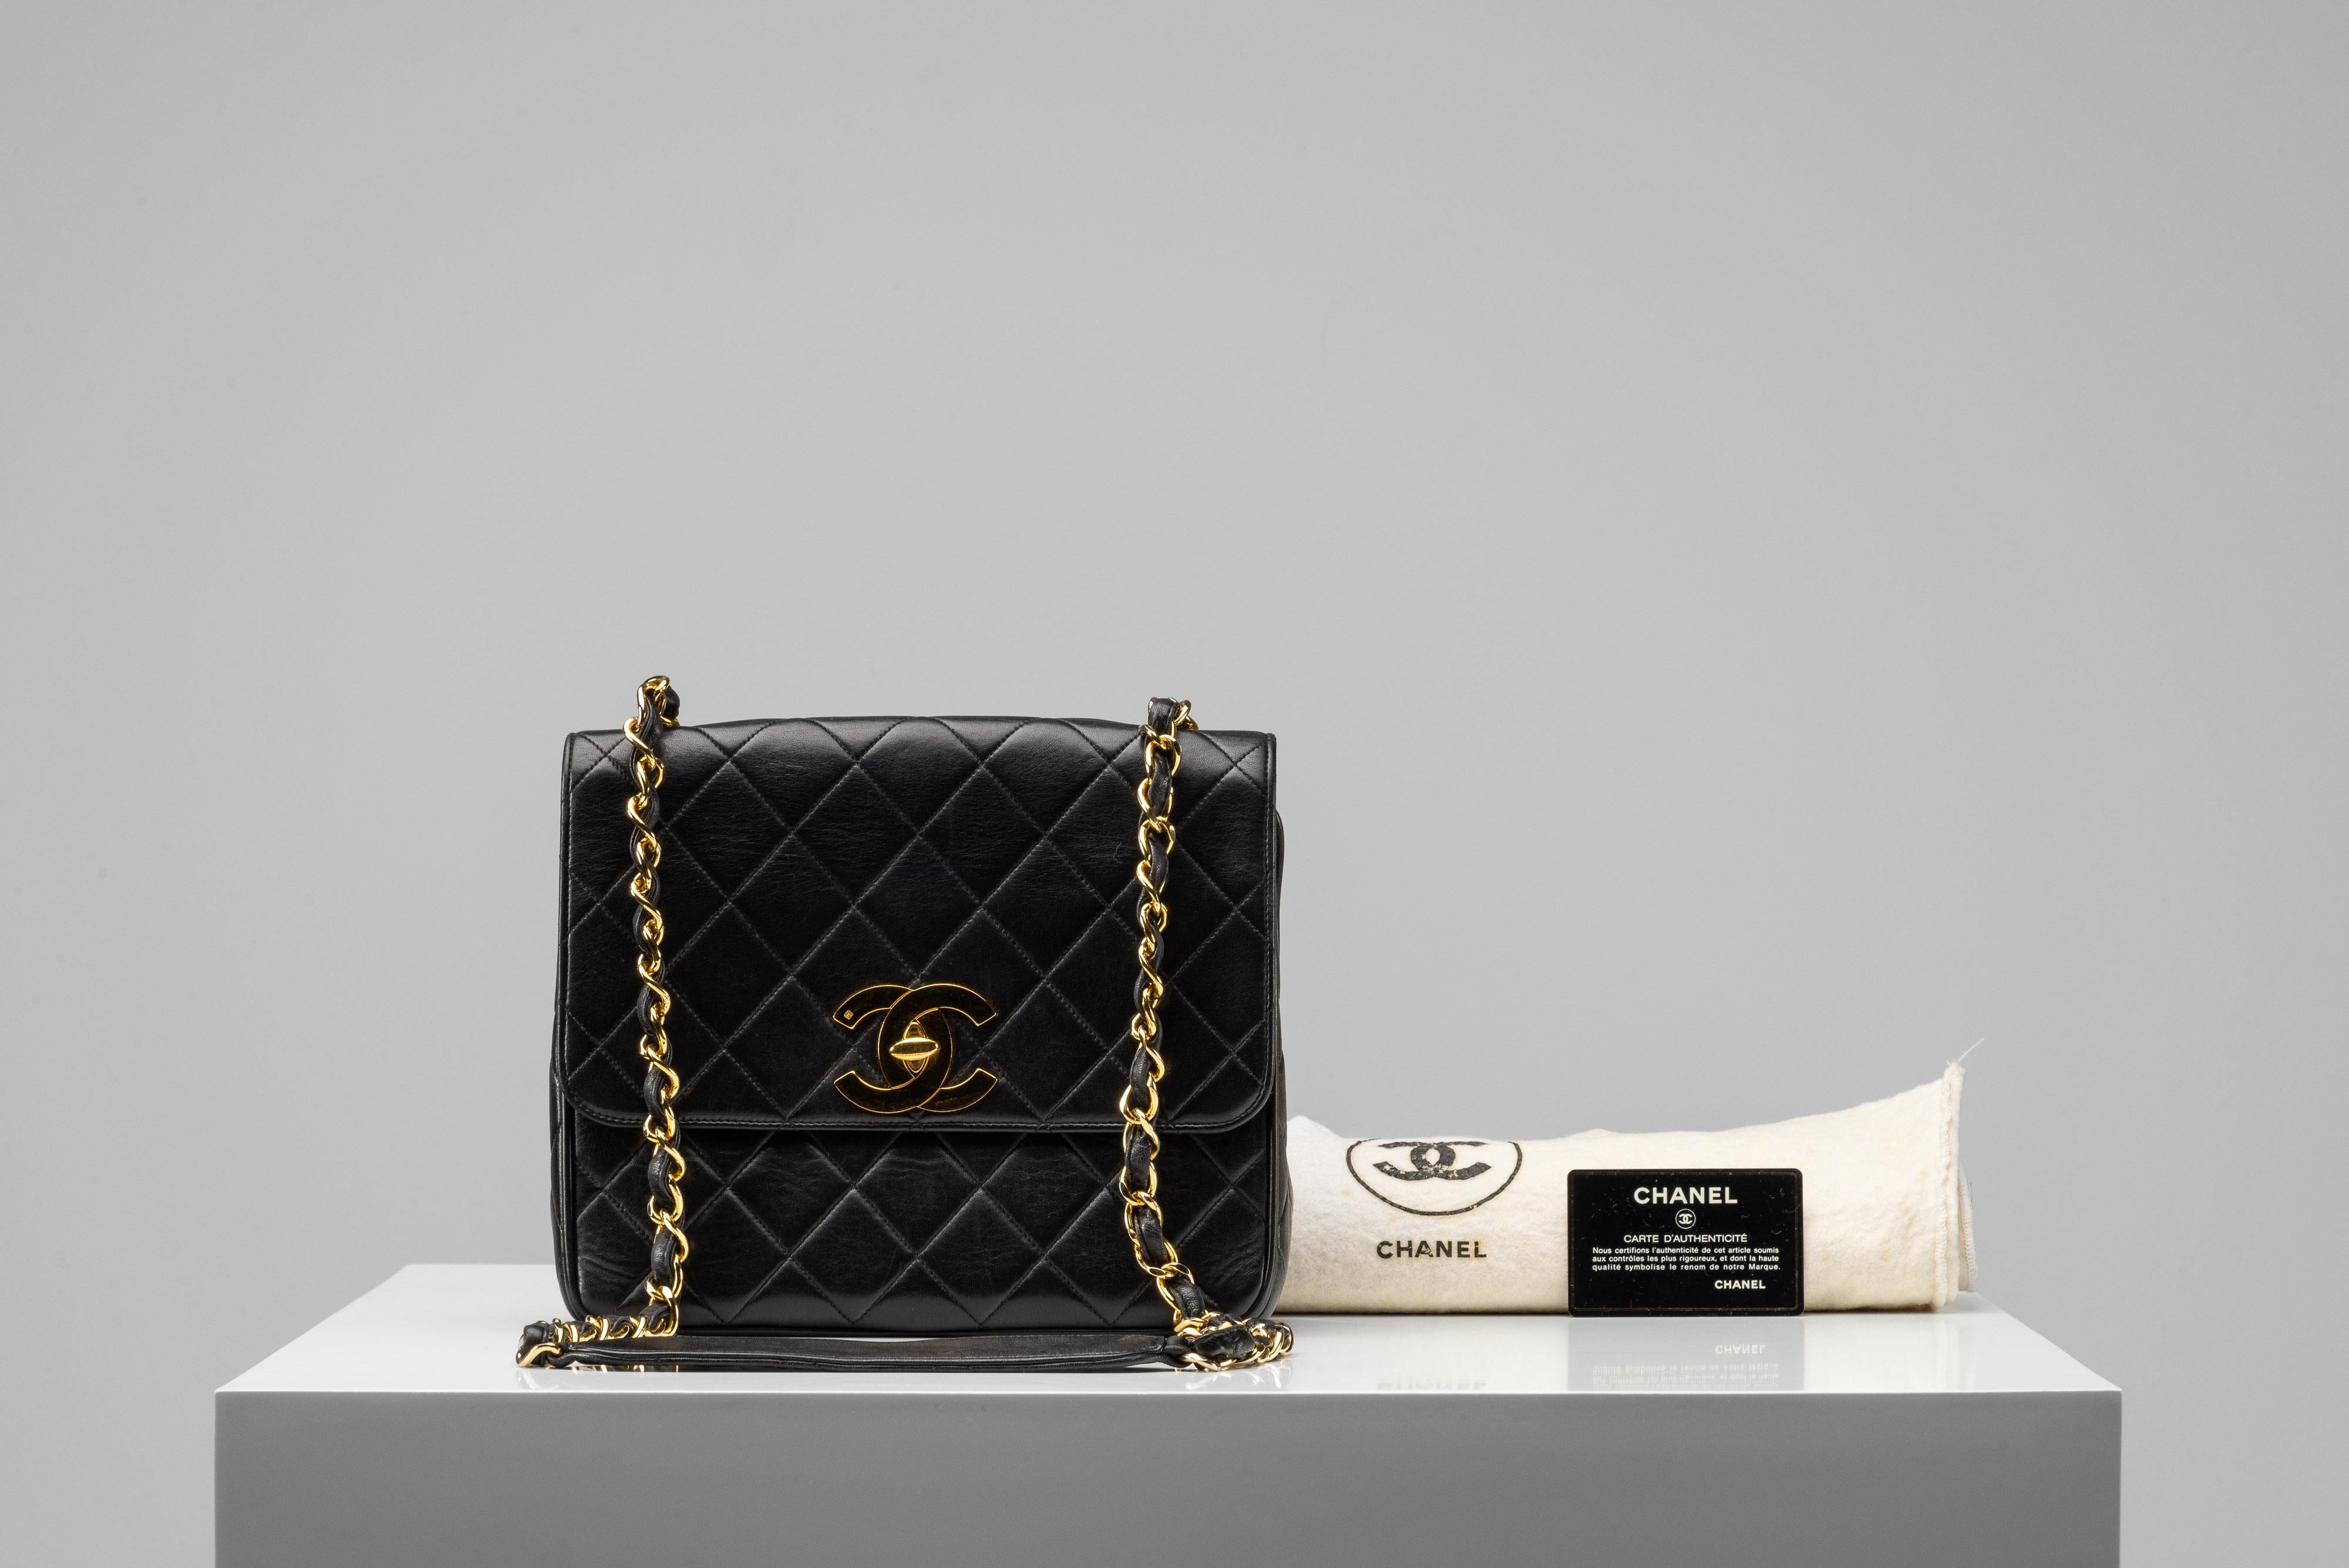 De la Collection SIGLI nous vous proposons ce Chanel Big Logo Flap Medium :
-    Marque : Chanel
-    Modèle : Bigli Flap
-    Couleur : Noir
-    Année : 1994-1996
-    Numéro de série : 3547254
-    Condit : Très bon état d'origine 
-    MATERIAL